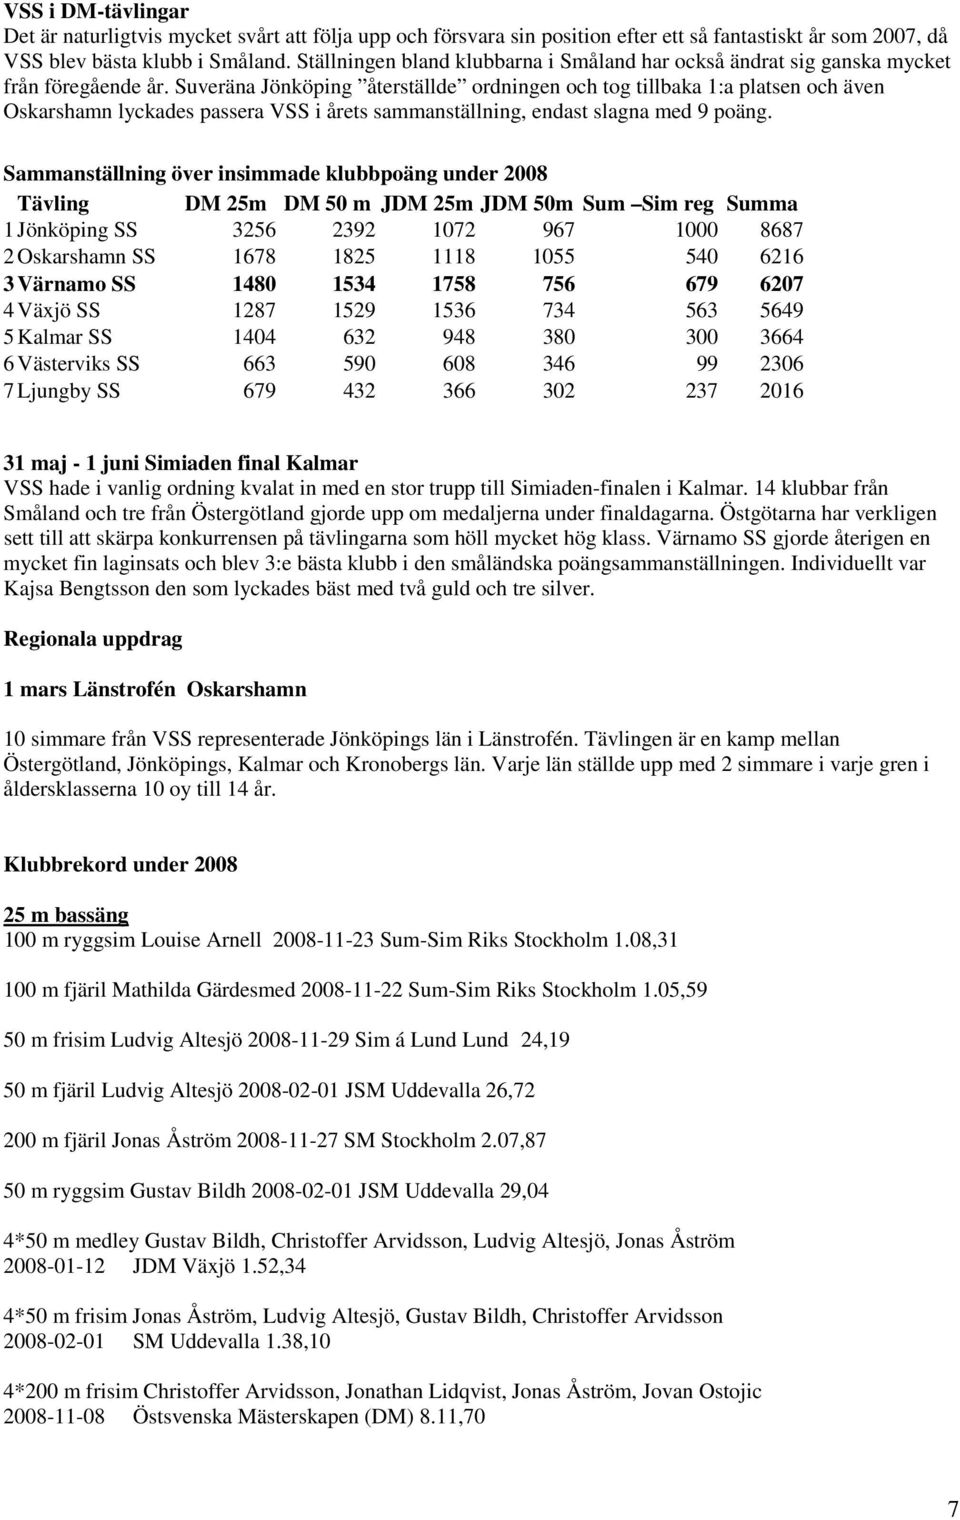 Suveräna Jönköping återställde ordningen och tog tillbaka 1:a platsen och även Oskarshamn lyckades passera VSS i årets sammanställning, endast slagna med 9 poäng.